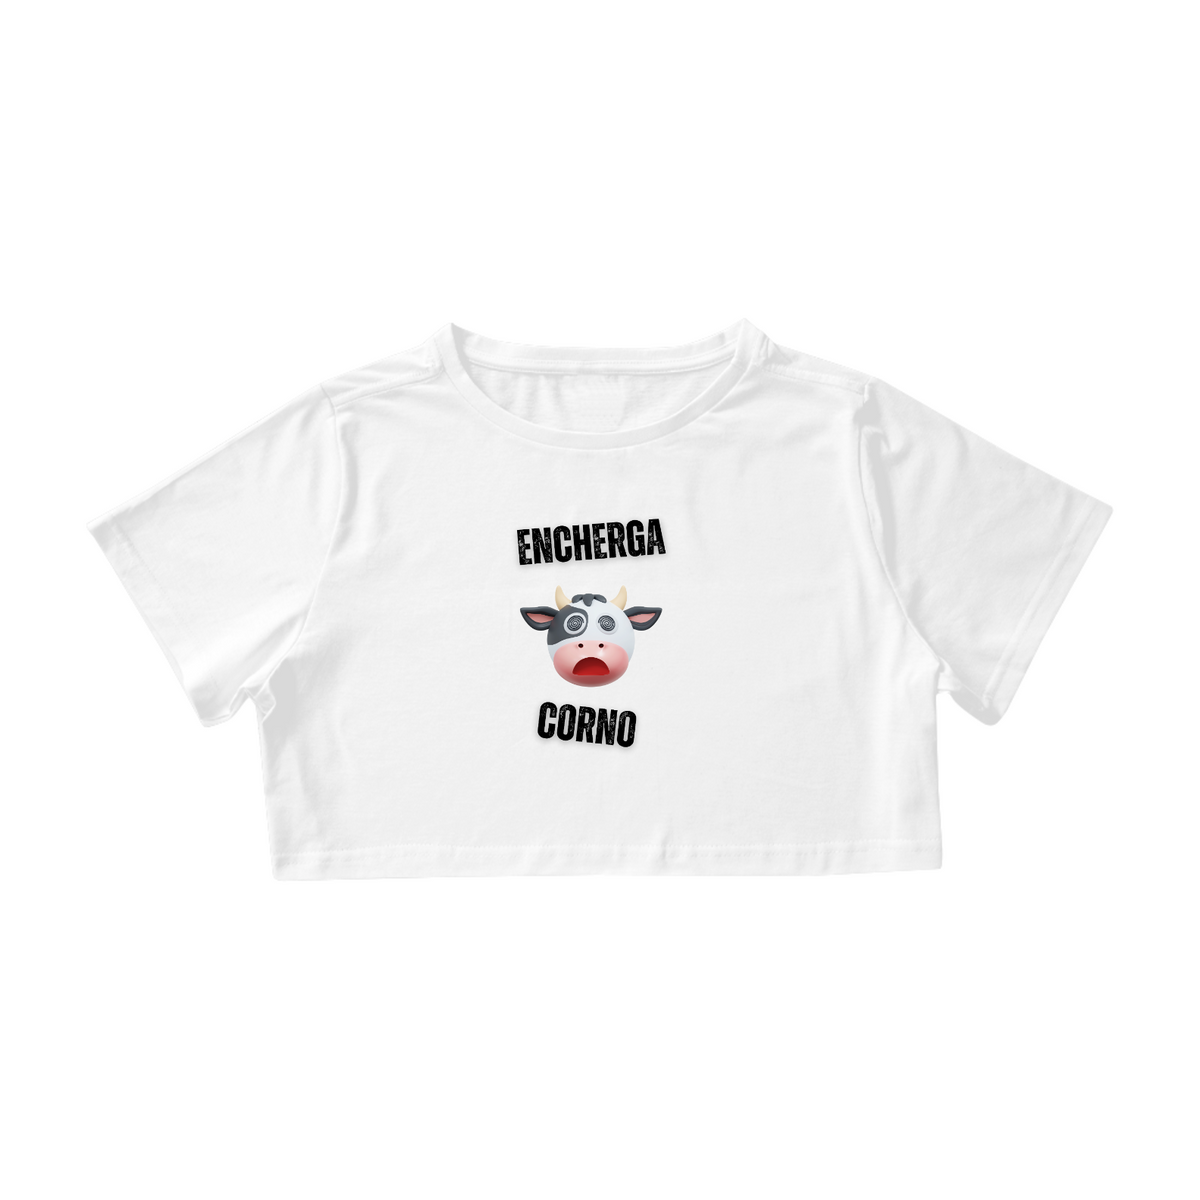 Nome do produto: Camisa Cropped / Encherga Corno